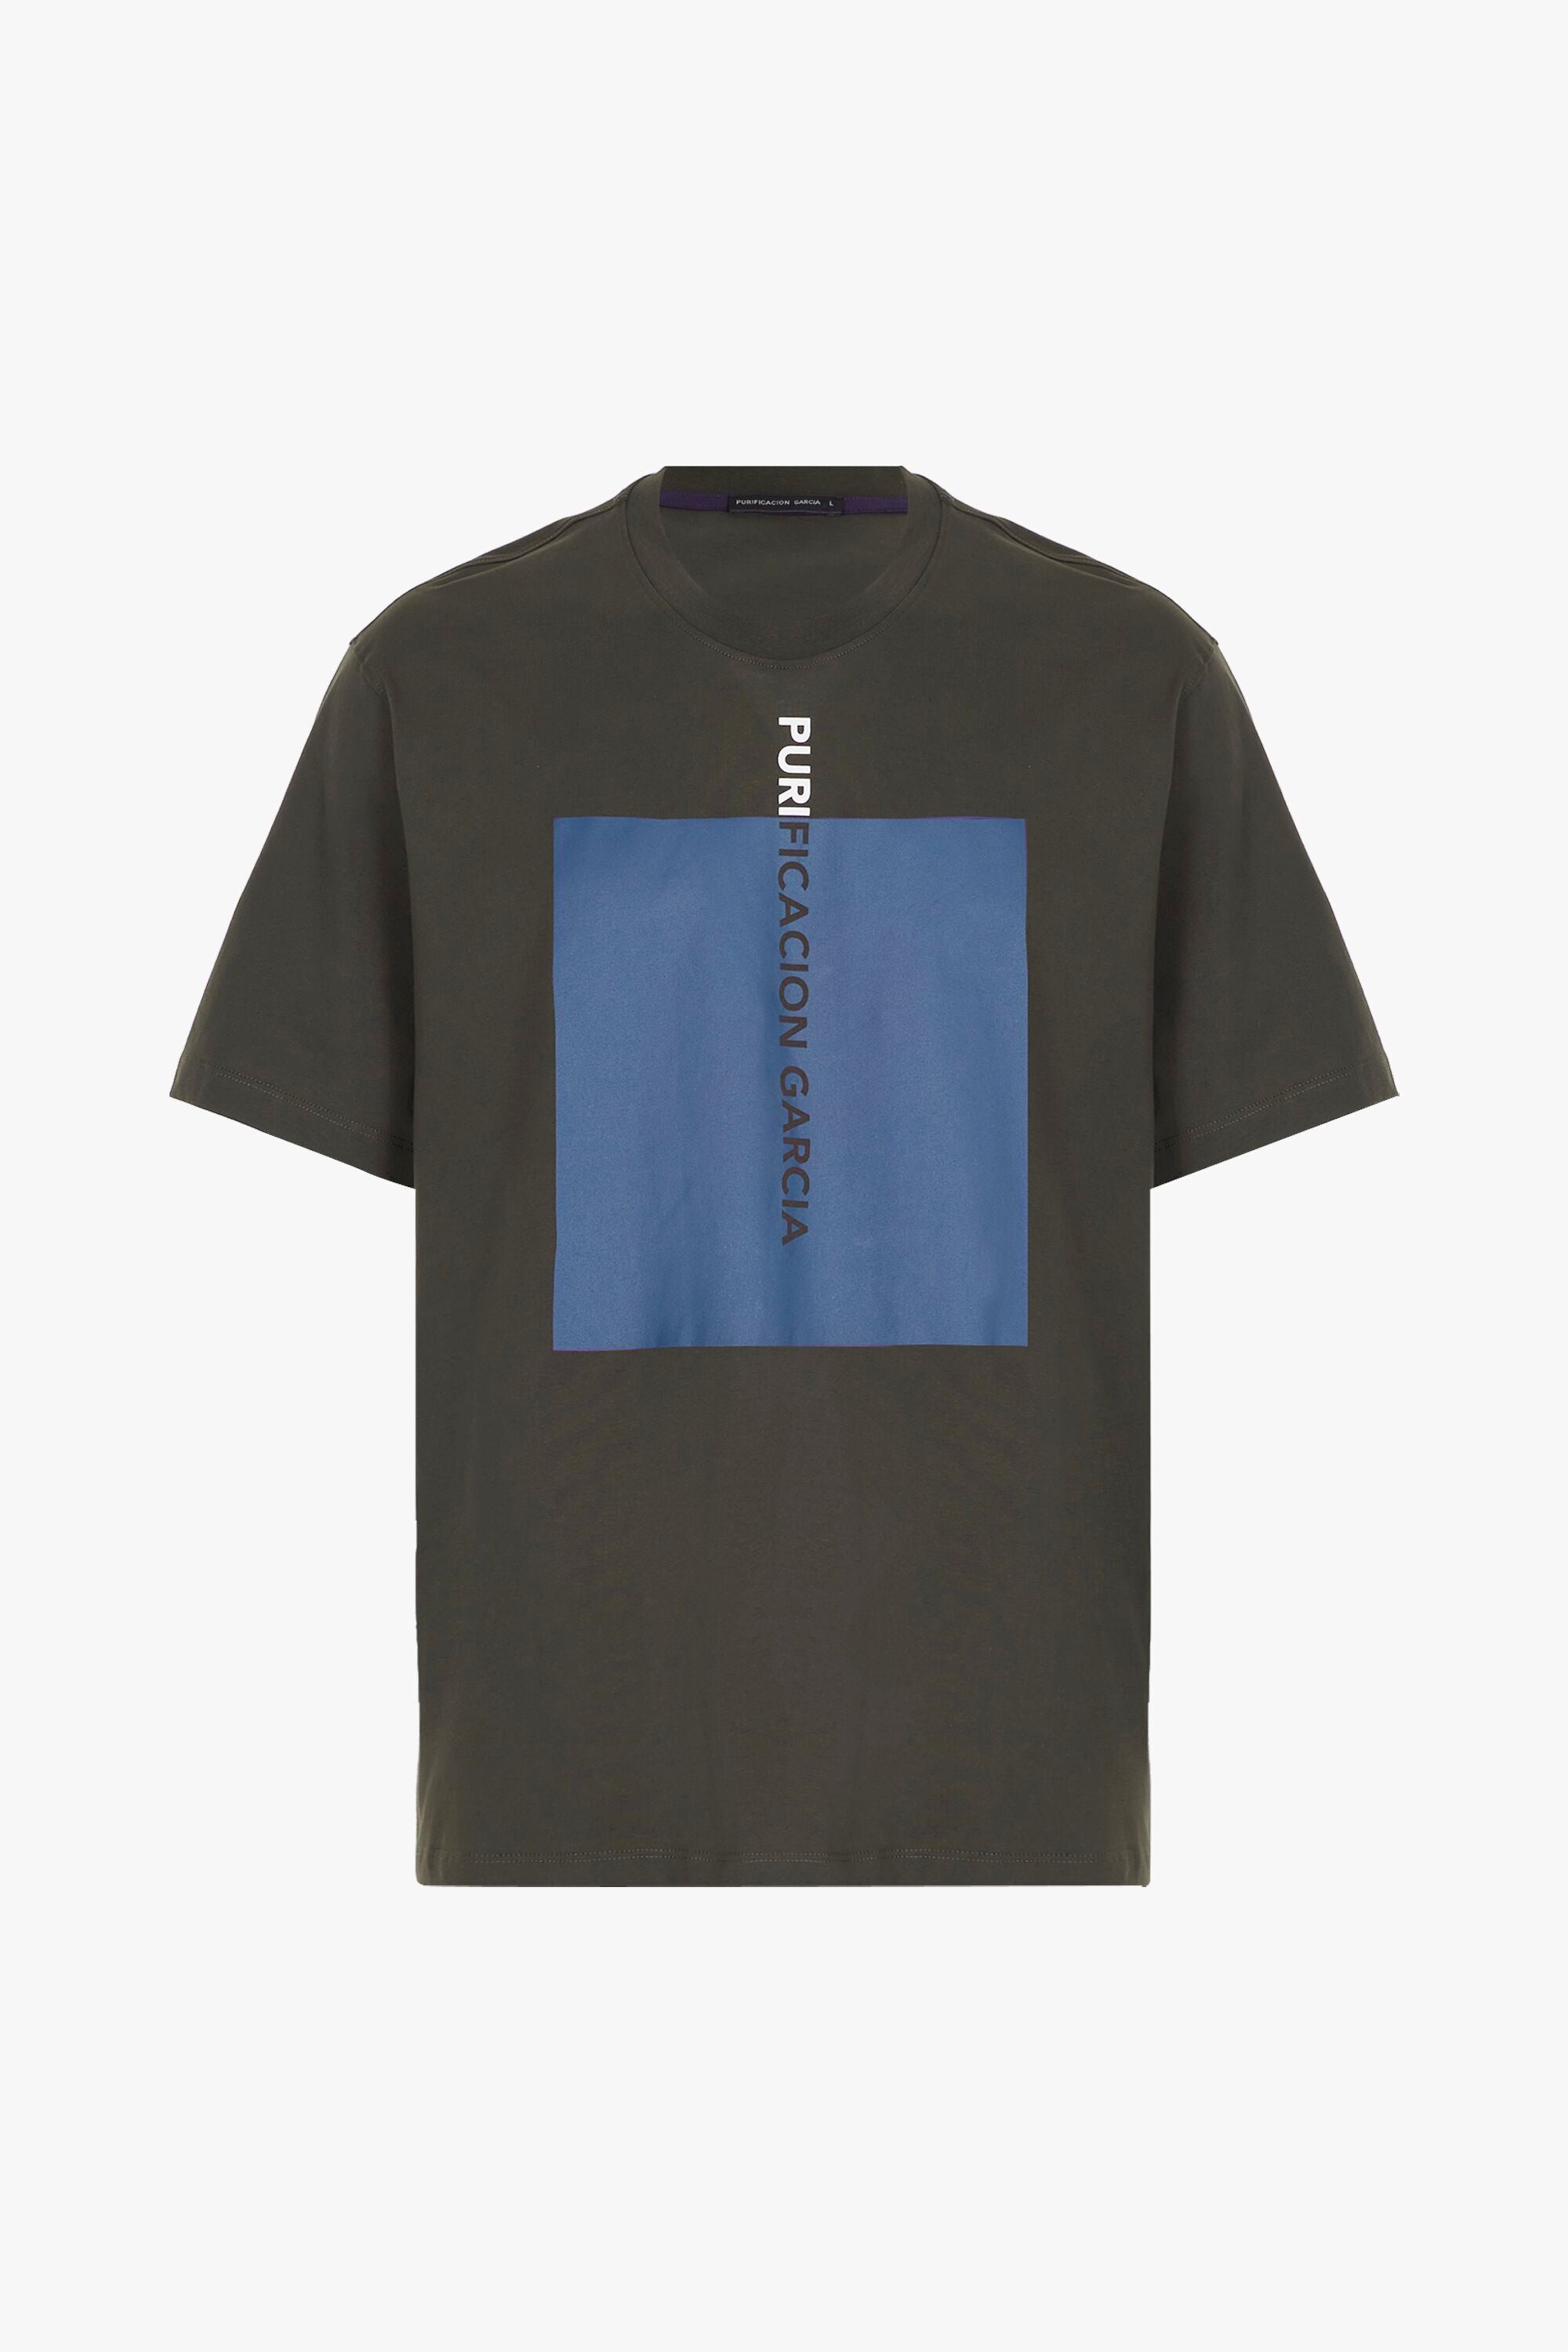 t-shirt - brown printed Purificacion Denmark Garcia Cube